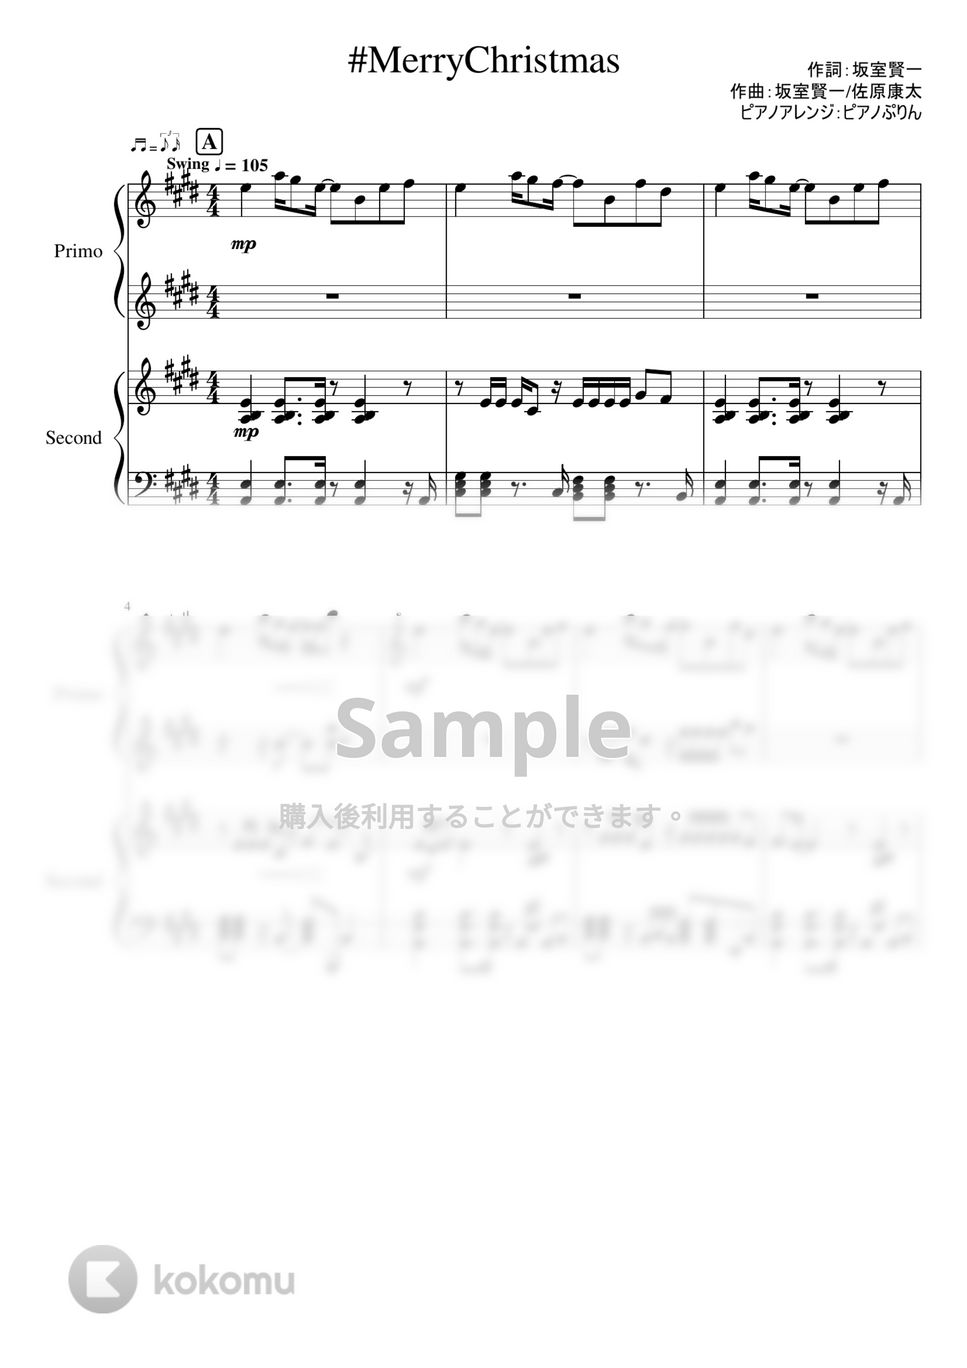 なにわ男子 - #MerryChristmas (連弾ピアノ楽譜 なにわ男子 3rd single/ハッピーサプライズ(全形態共通カップリング曲)) by ピアノぷりん